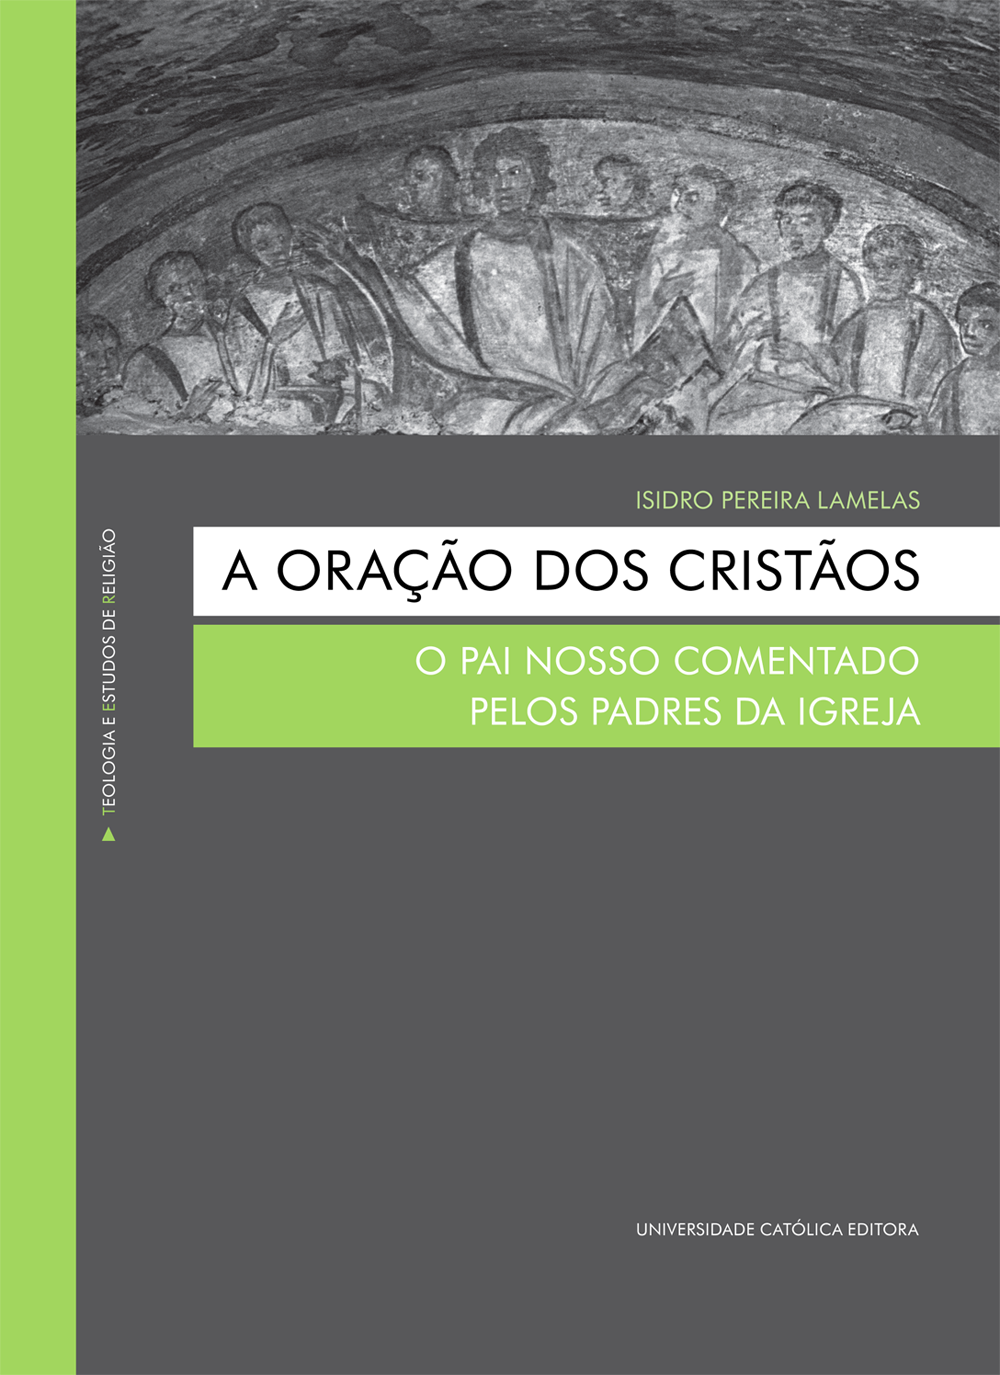 A ORAÇÃO DOS CRISTÃOS - Teologia e Estudos de Religião  | E-Book